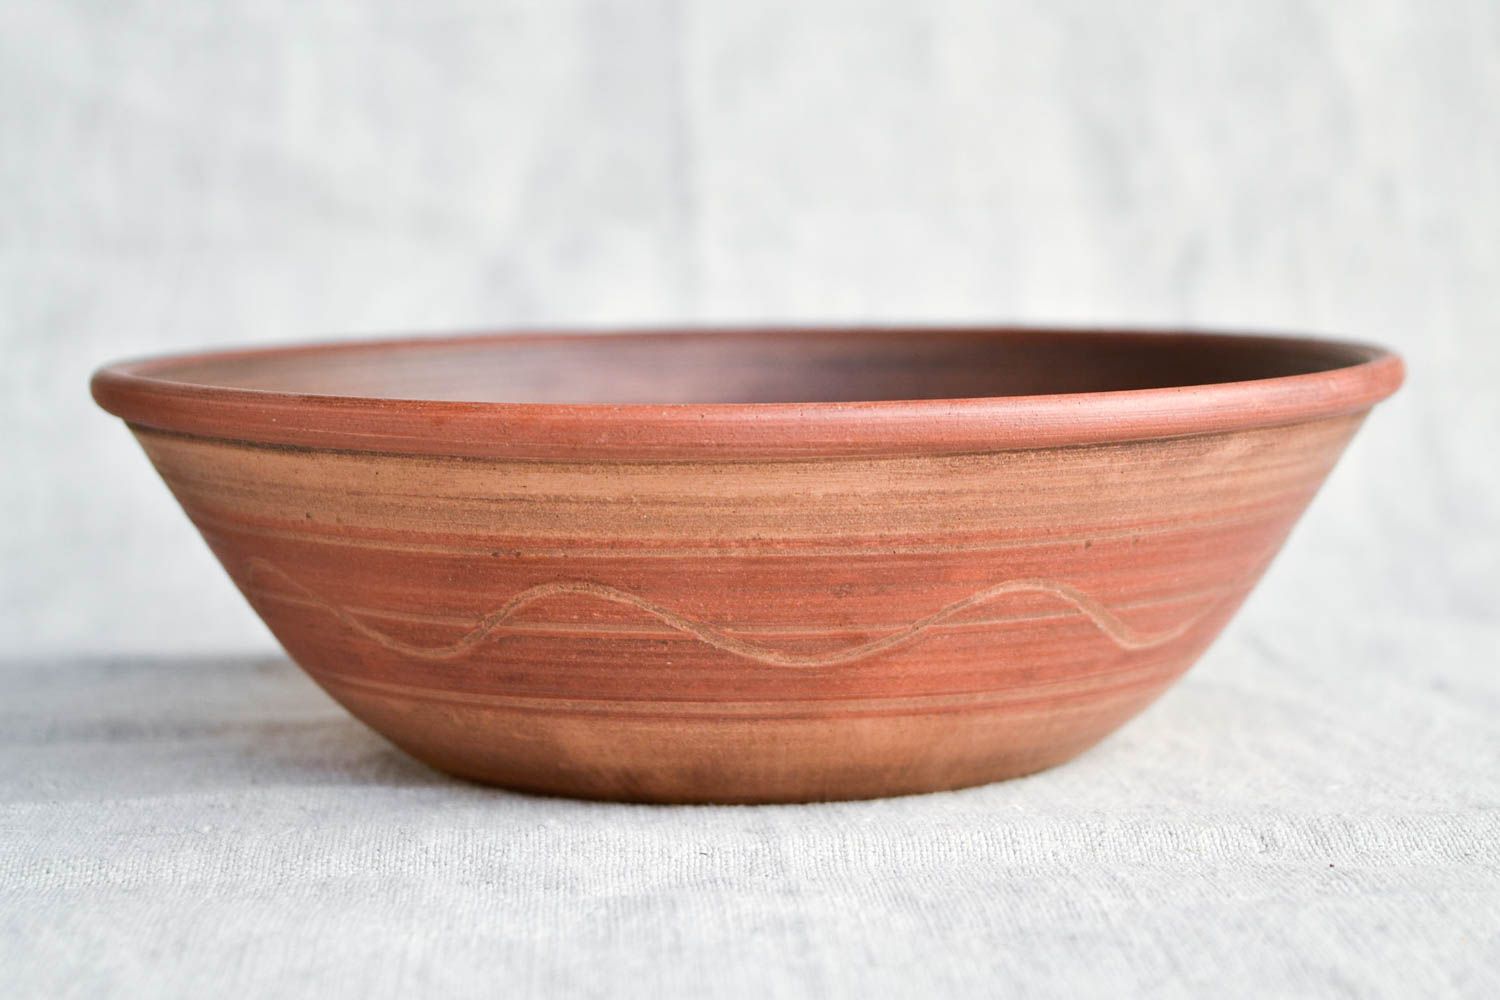 Handmade ceramic bowl ceramic plate stoneware dinnerware kitchen decor photo 3